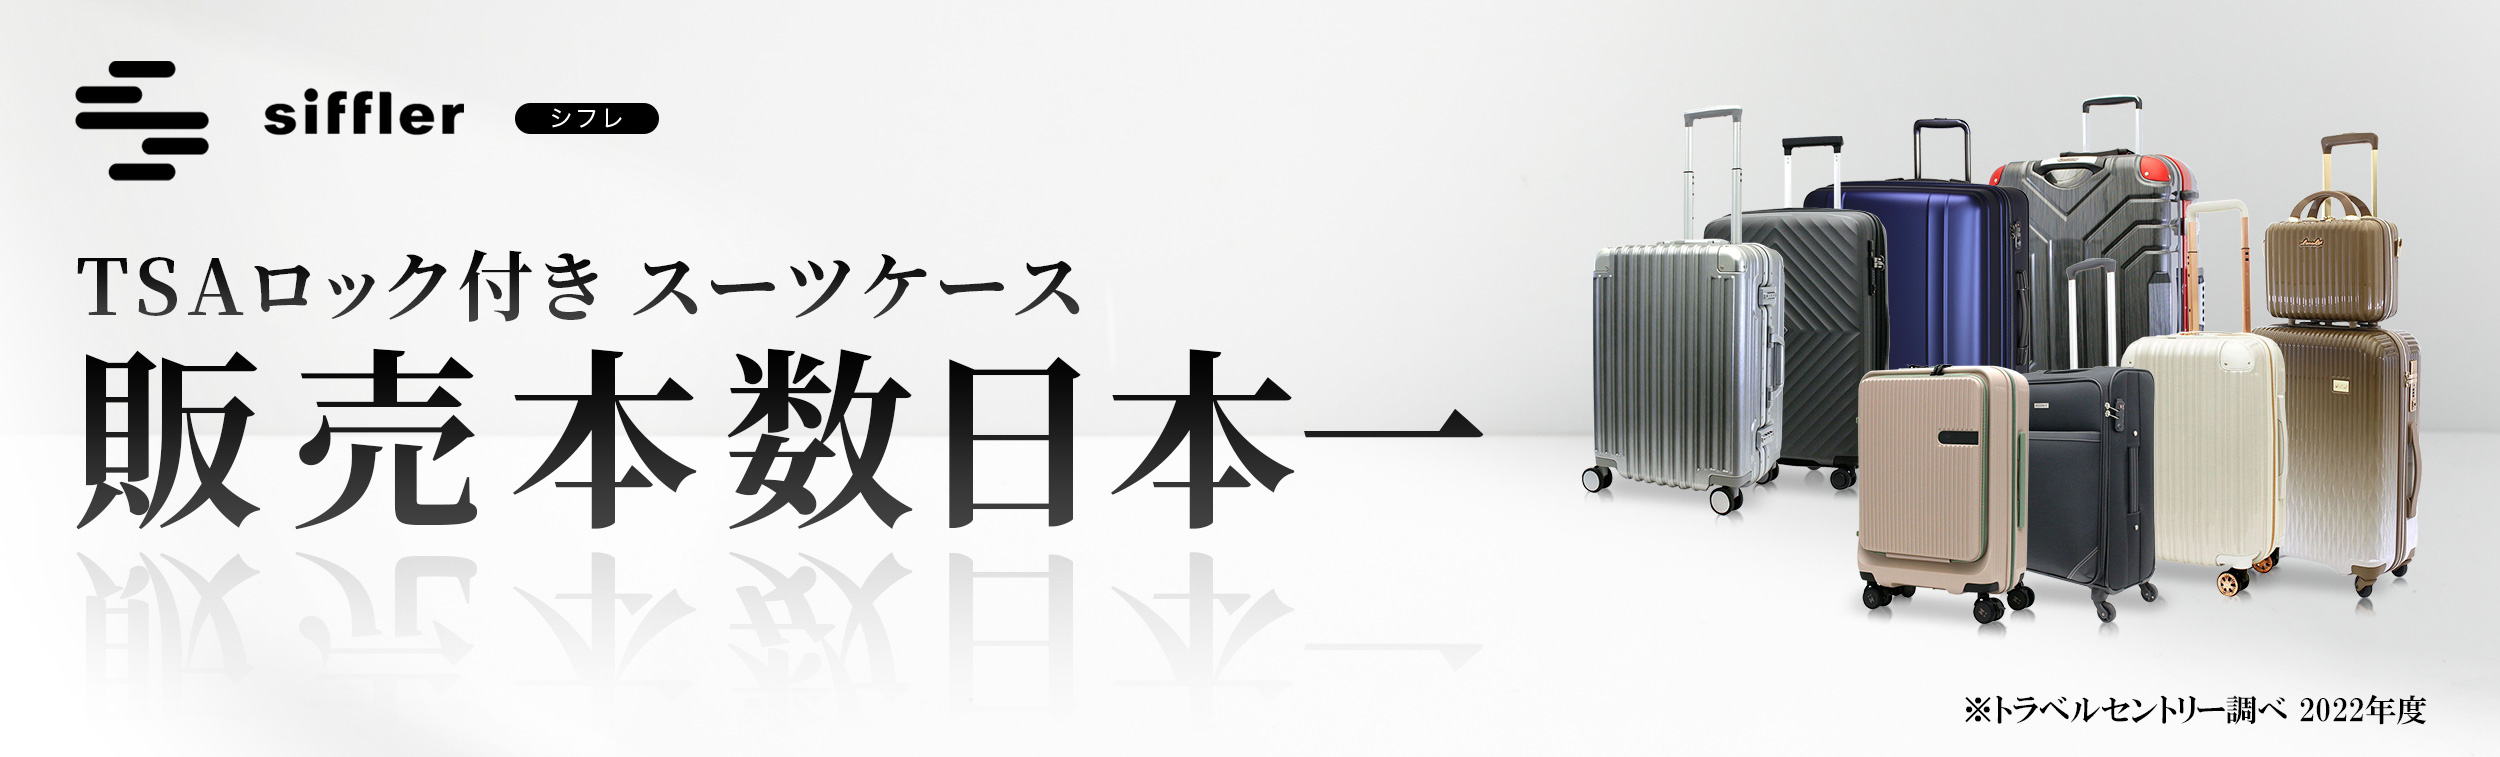 スーツケース販売本数日本一